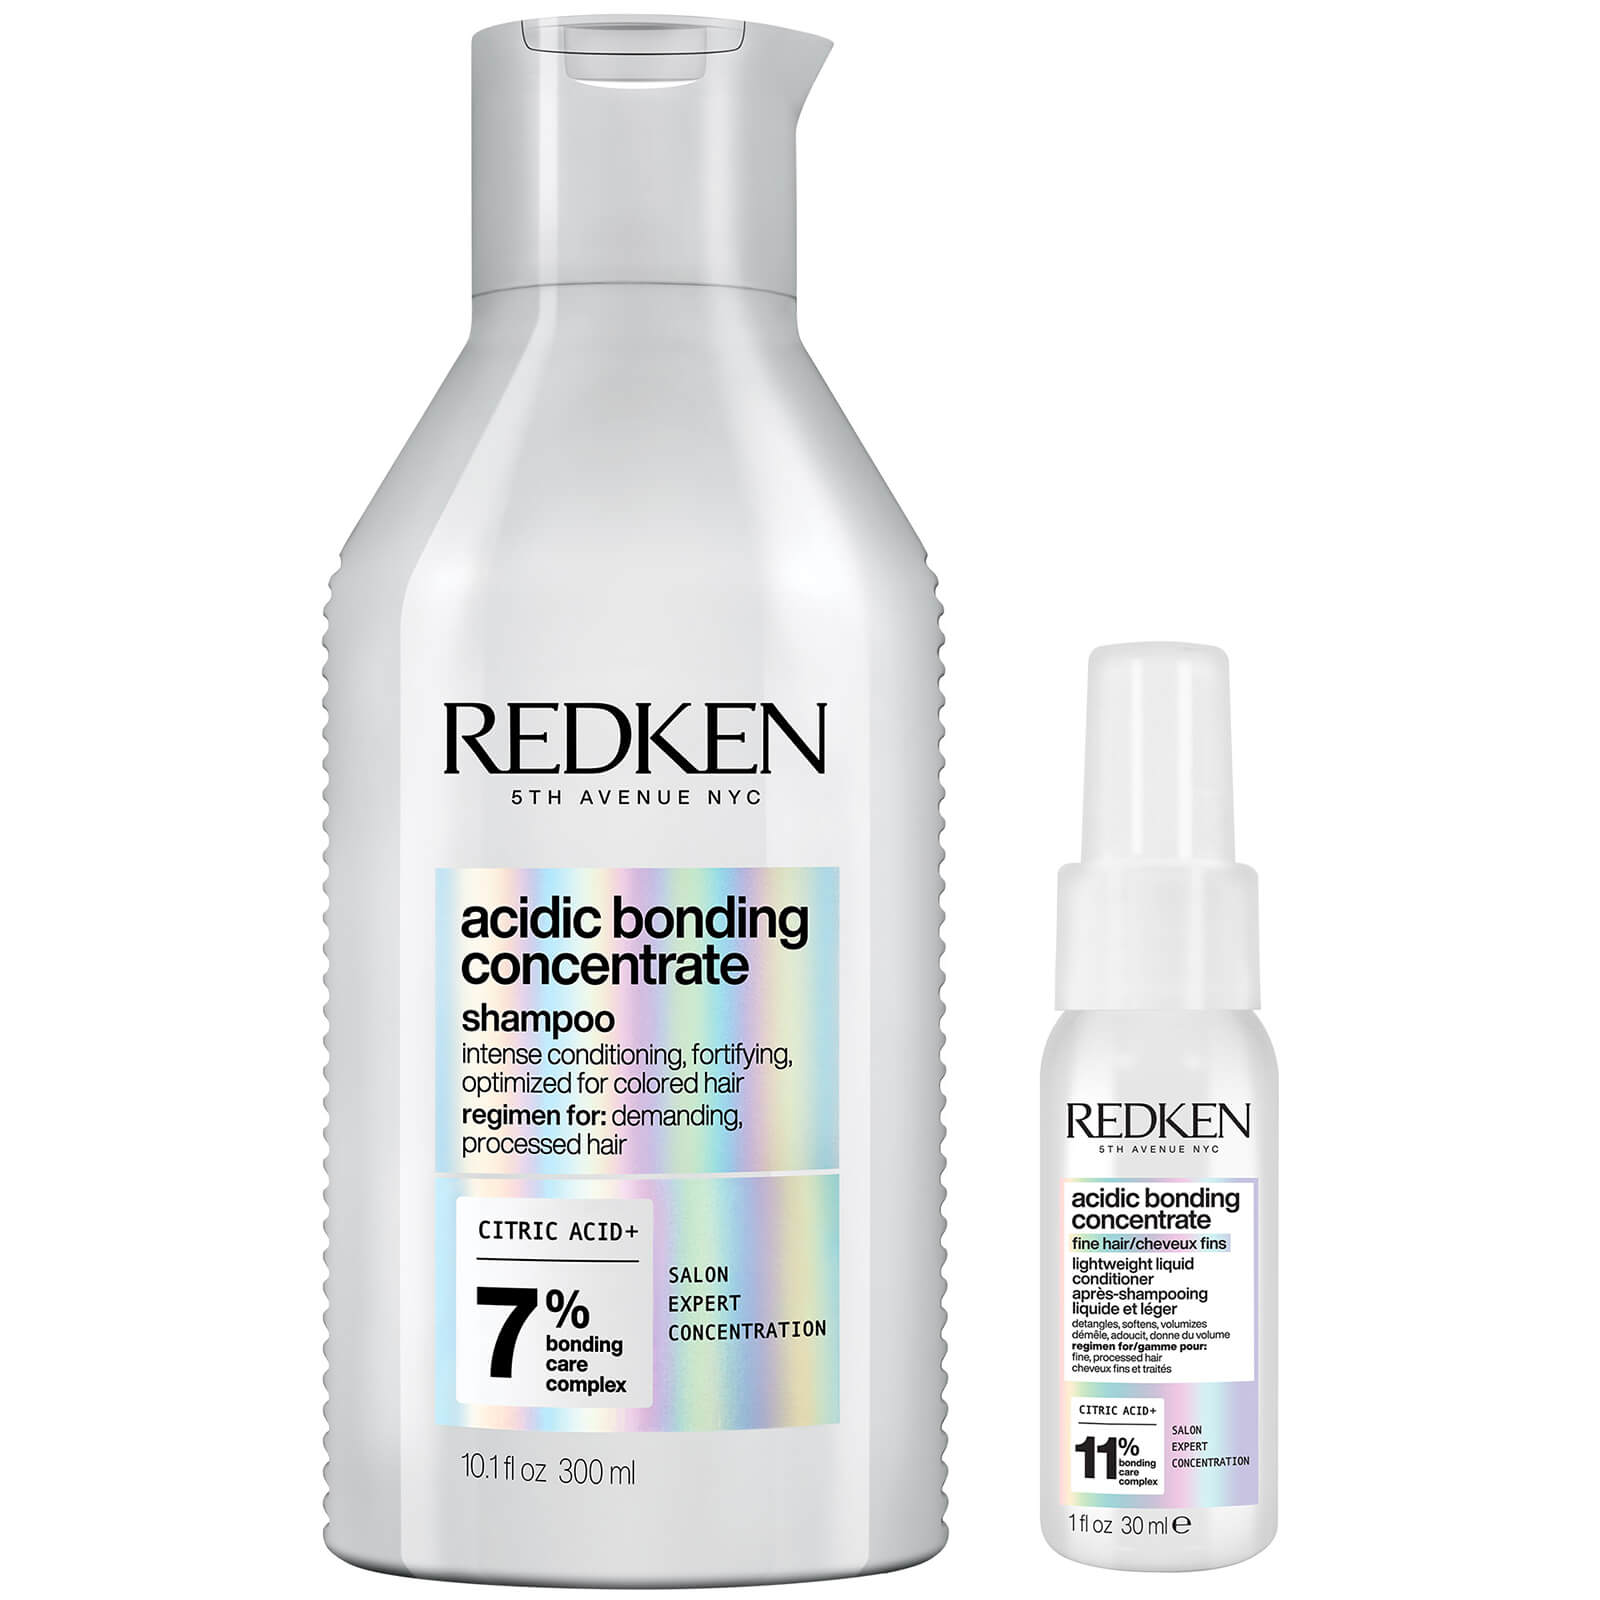 Redken Acidic Bonding Concentrate Bond Repair Shampoo 300ml and Lightweight Liquid Conditioner 30ml 